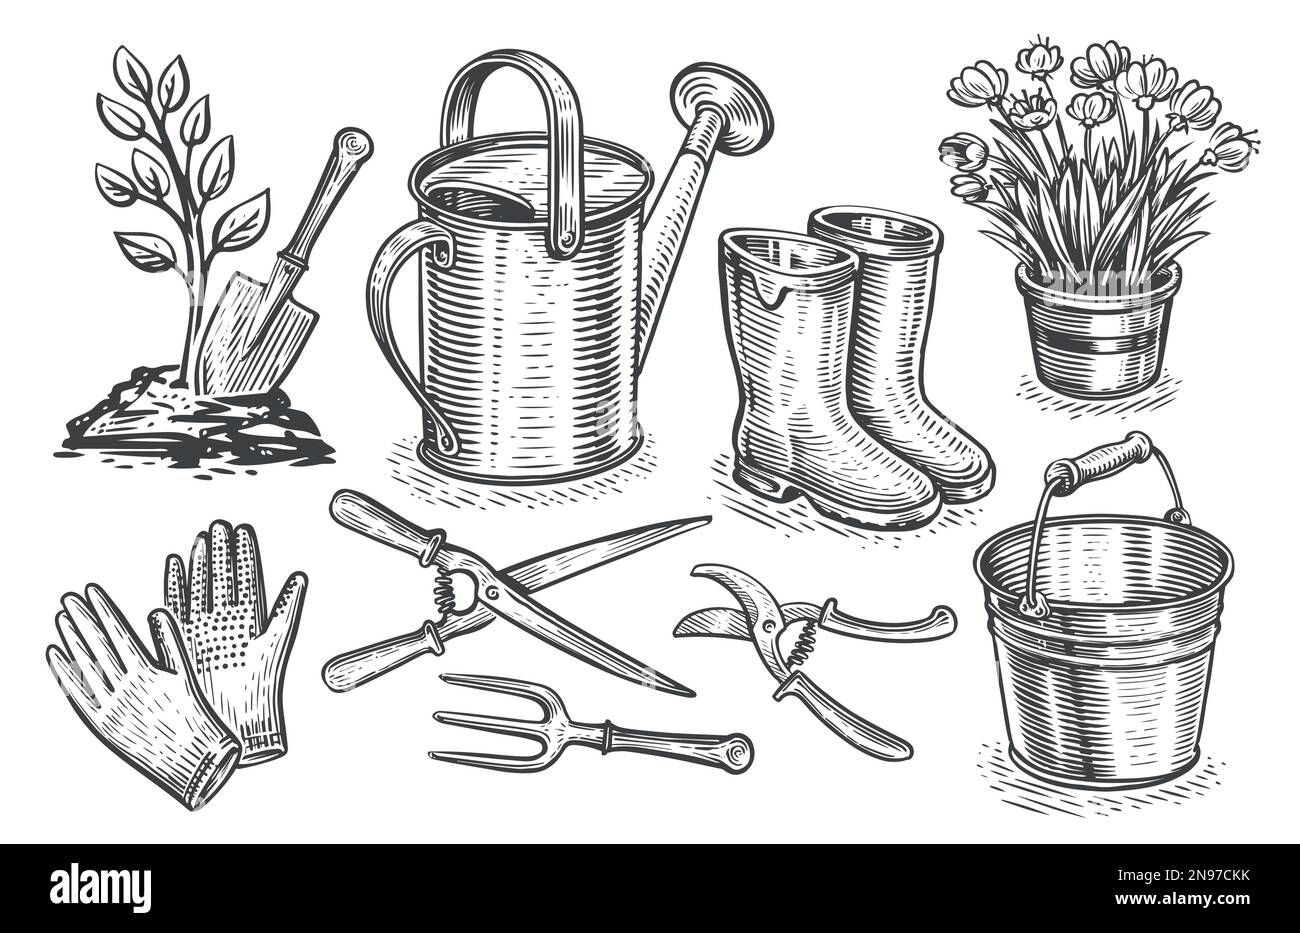 Concetto di giardinaggio. Gli elementi disegnati a mano da giardino sono impostati nello stile di schizzo. Illustrazione vettoriale vintage Illustrazione Vettoriale